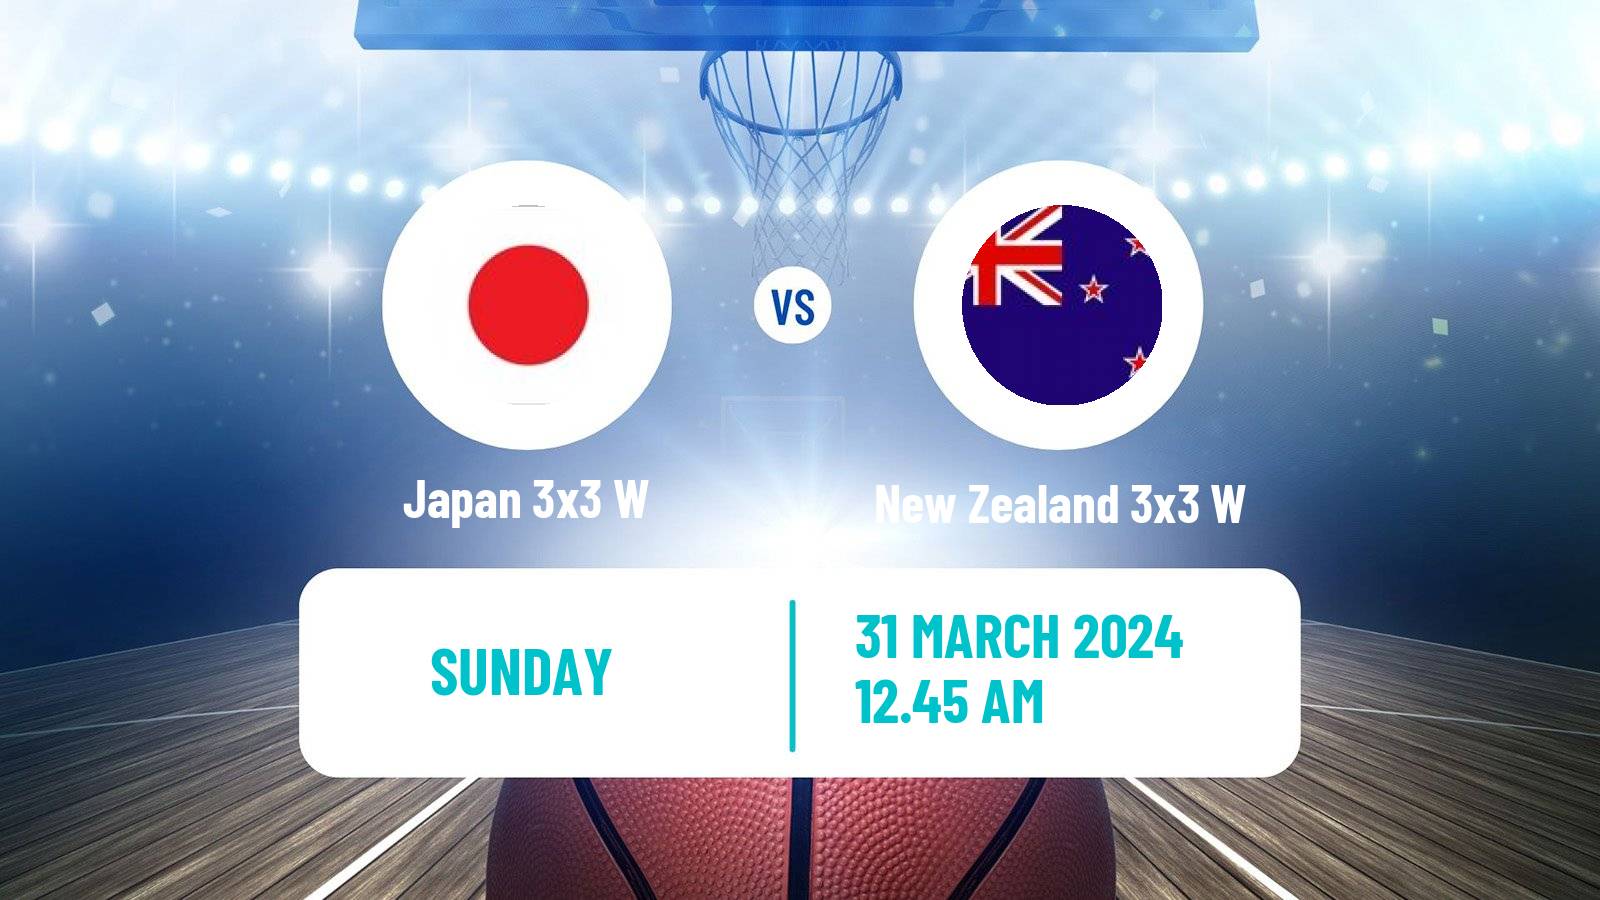 Basketball Asia Cup 3x3 Women Japan 3x3 W - New Zealand 3x3 W